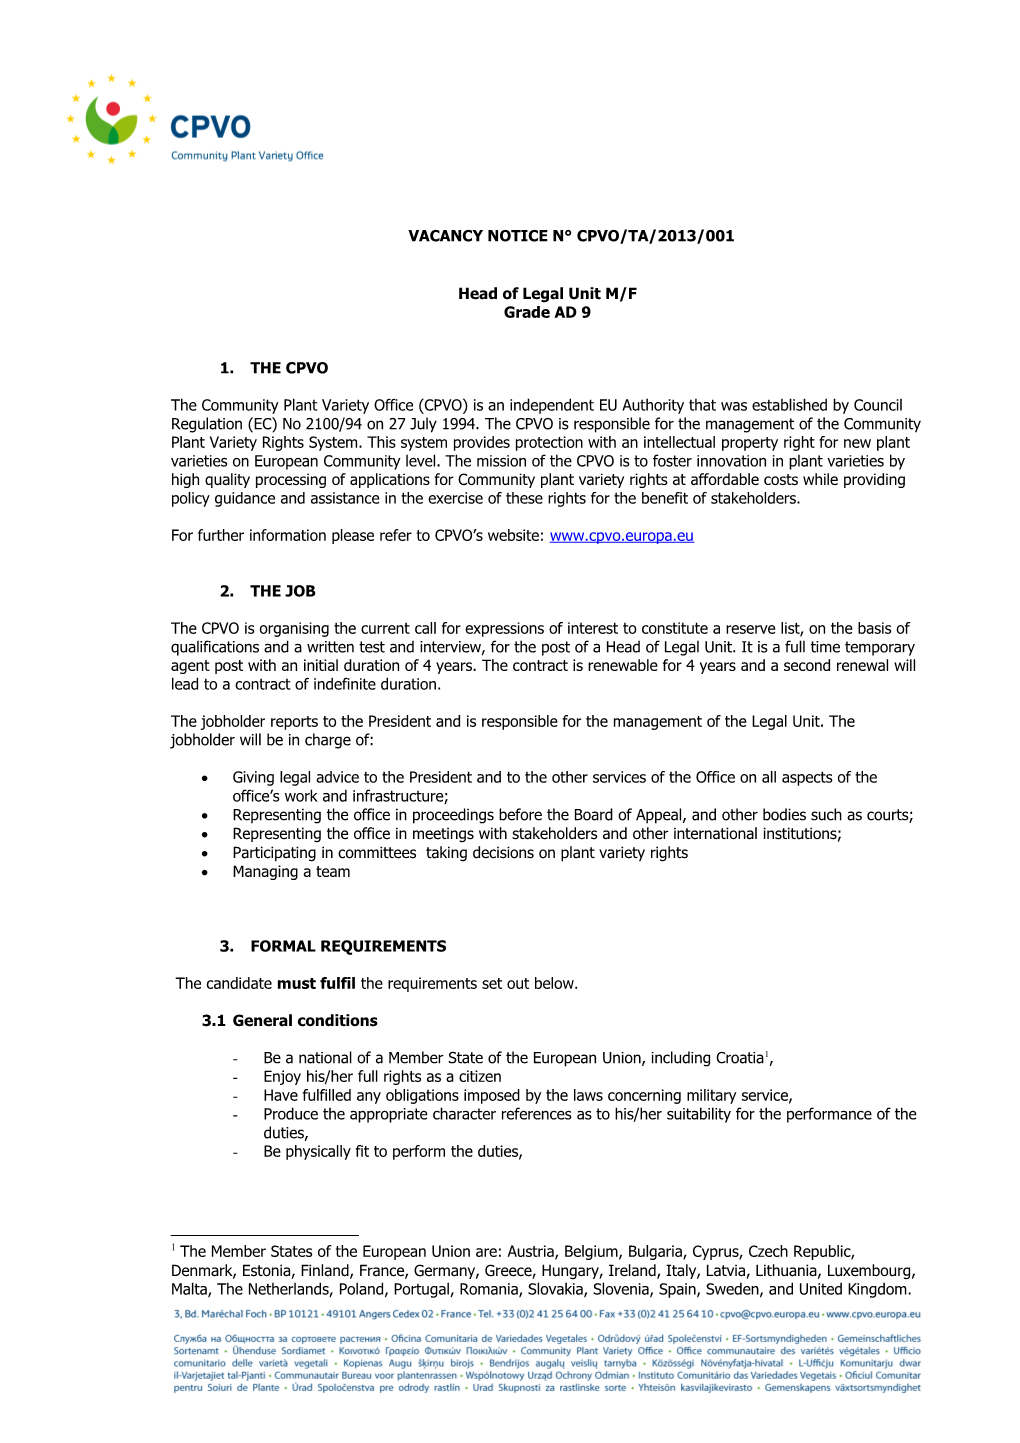 Vacancy Notice N Cpvo/Ta/2013/001